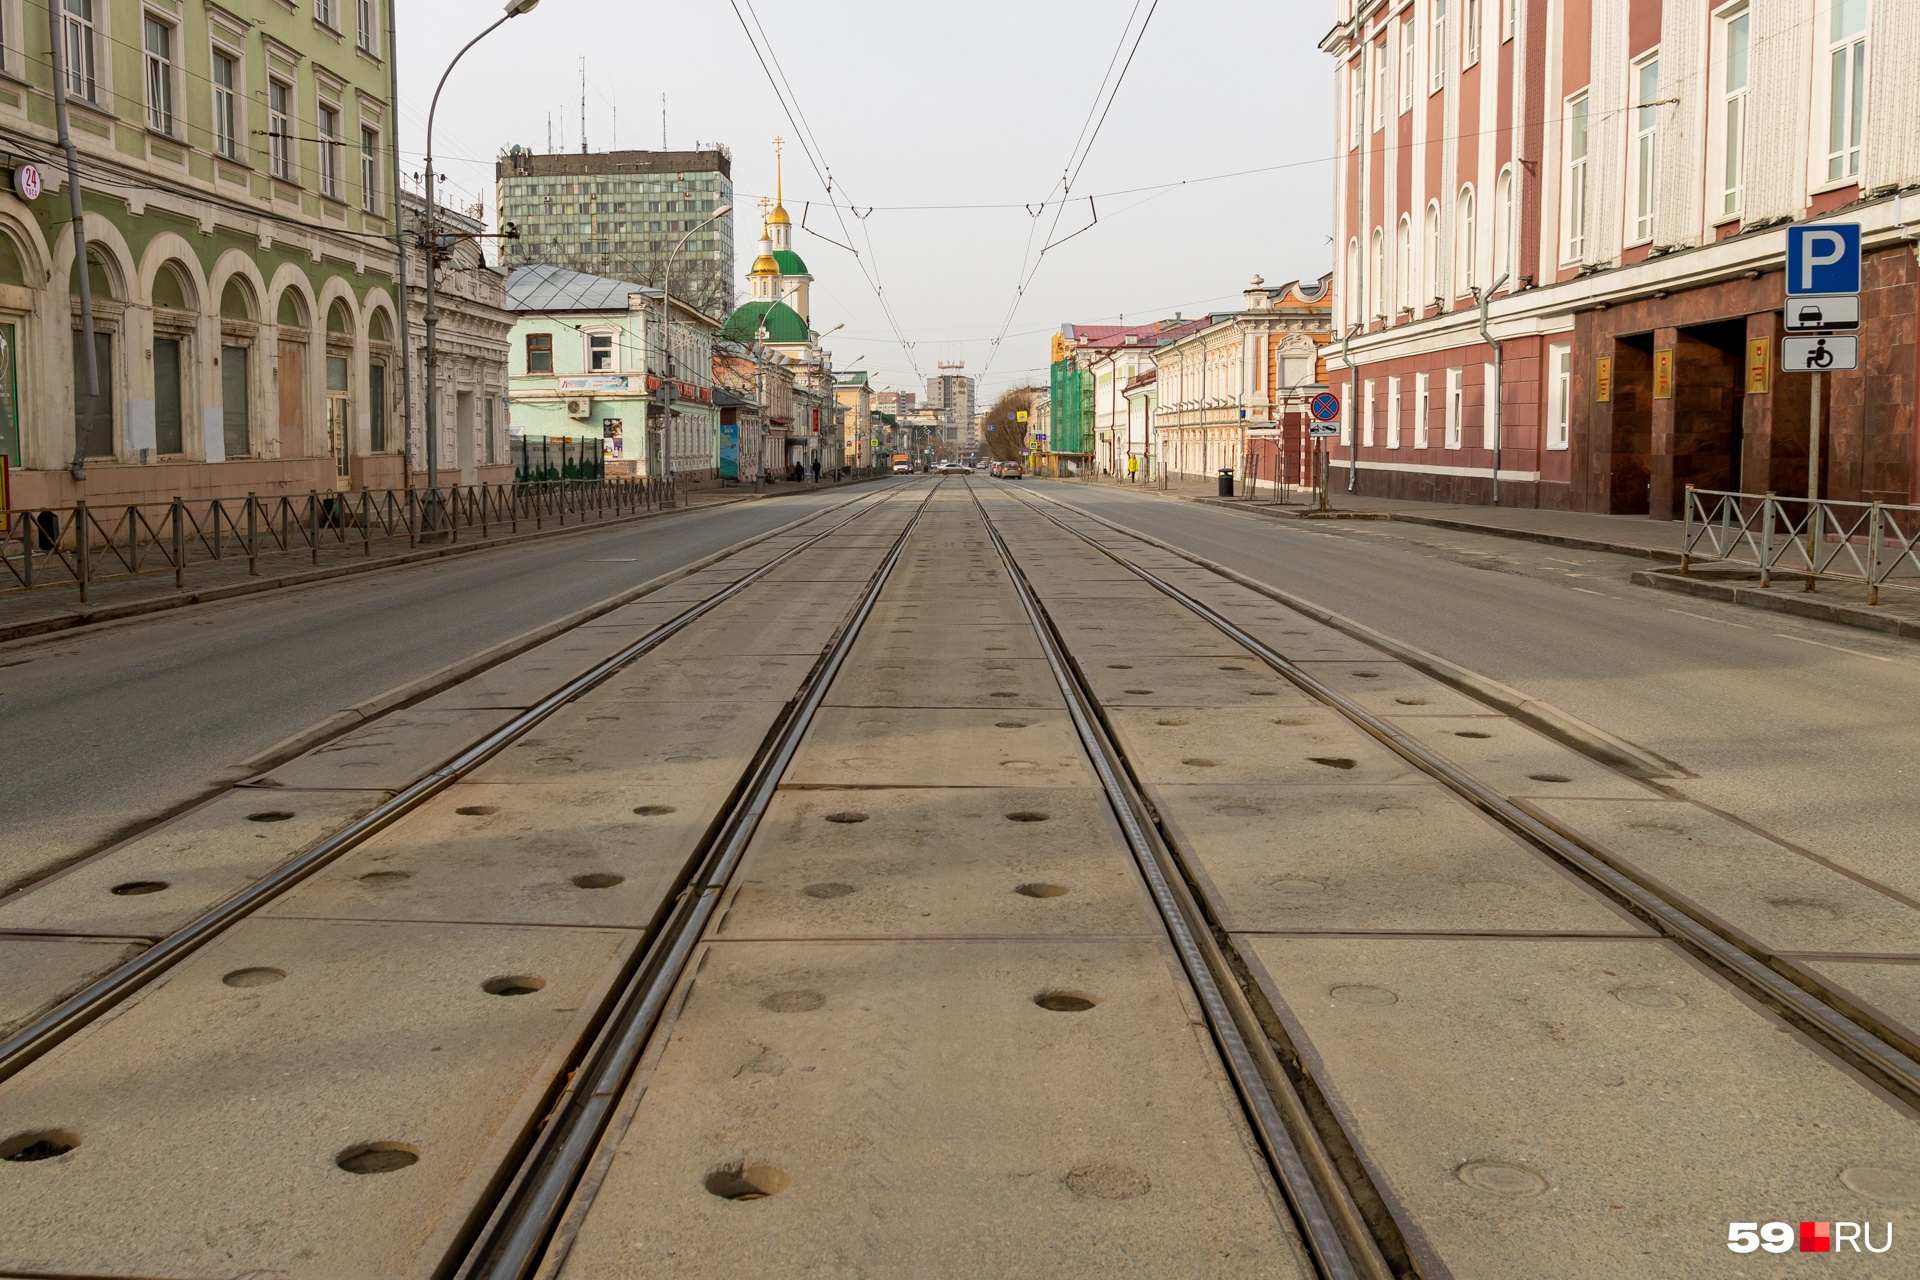 Так выглядела улица 30 марта, в этот день началась всероссийская нерабочая неделя